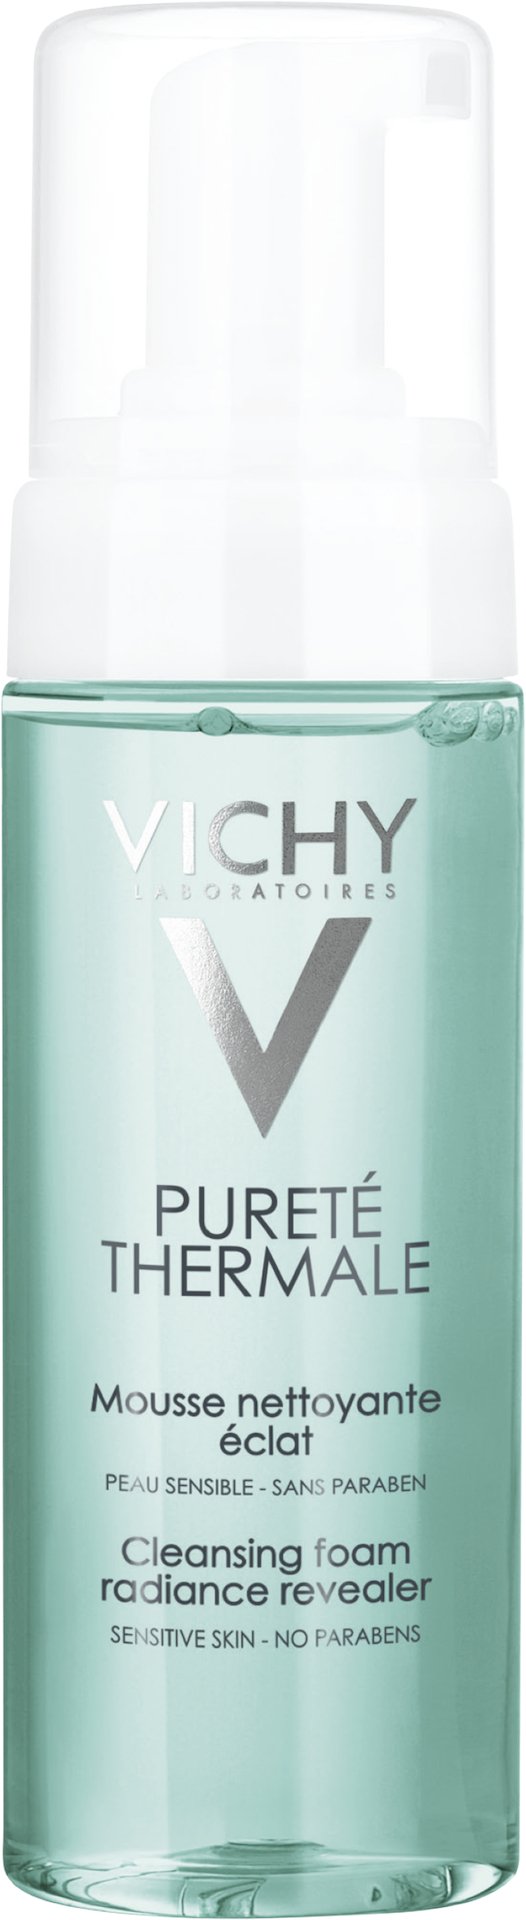 Vichy Pureté Thermale Cleansing Foam 150 ml